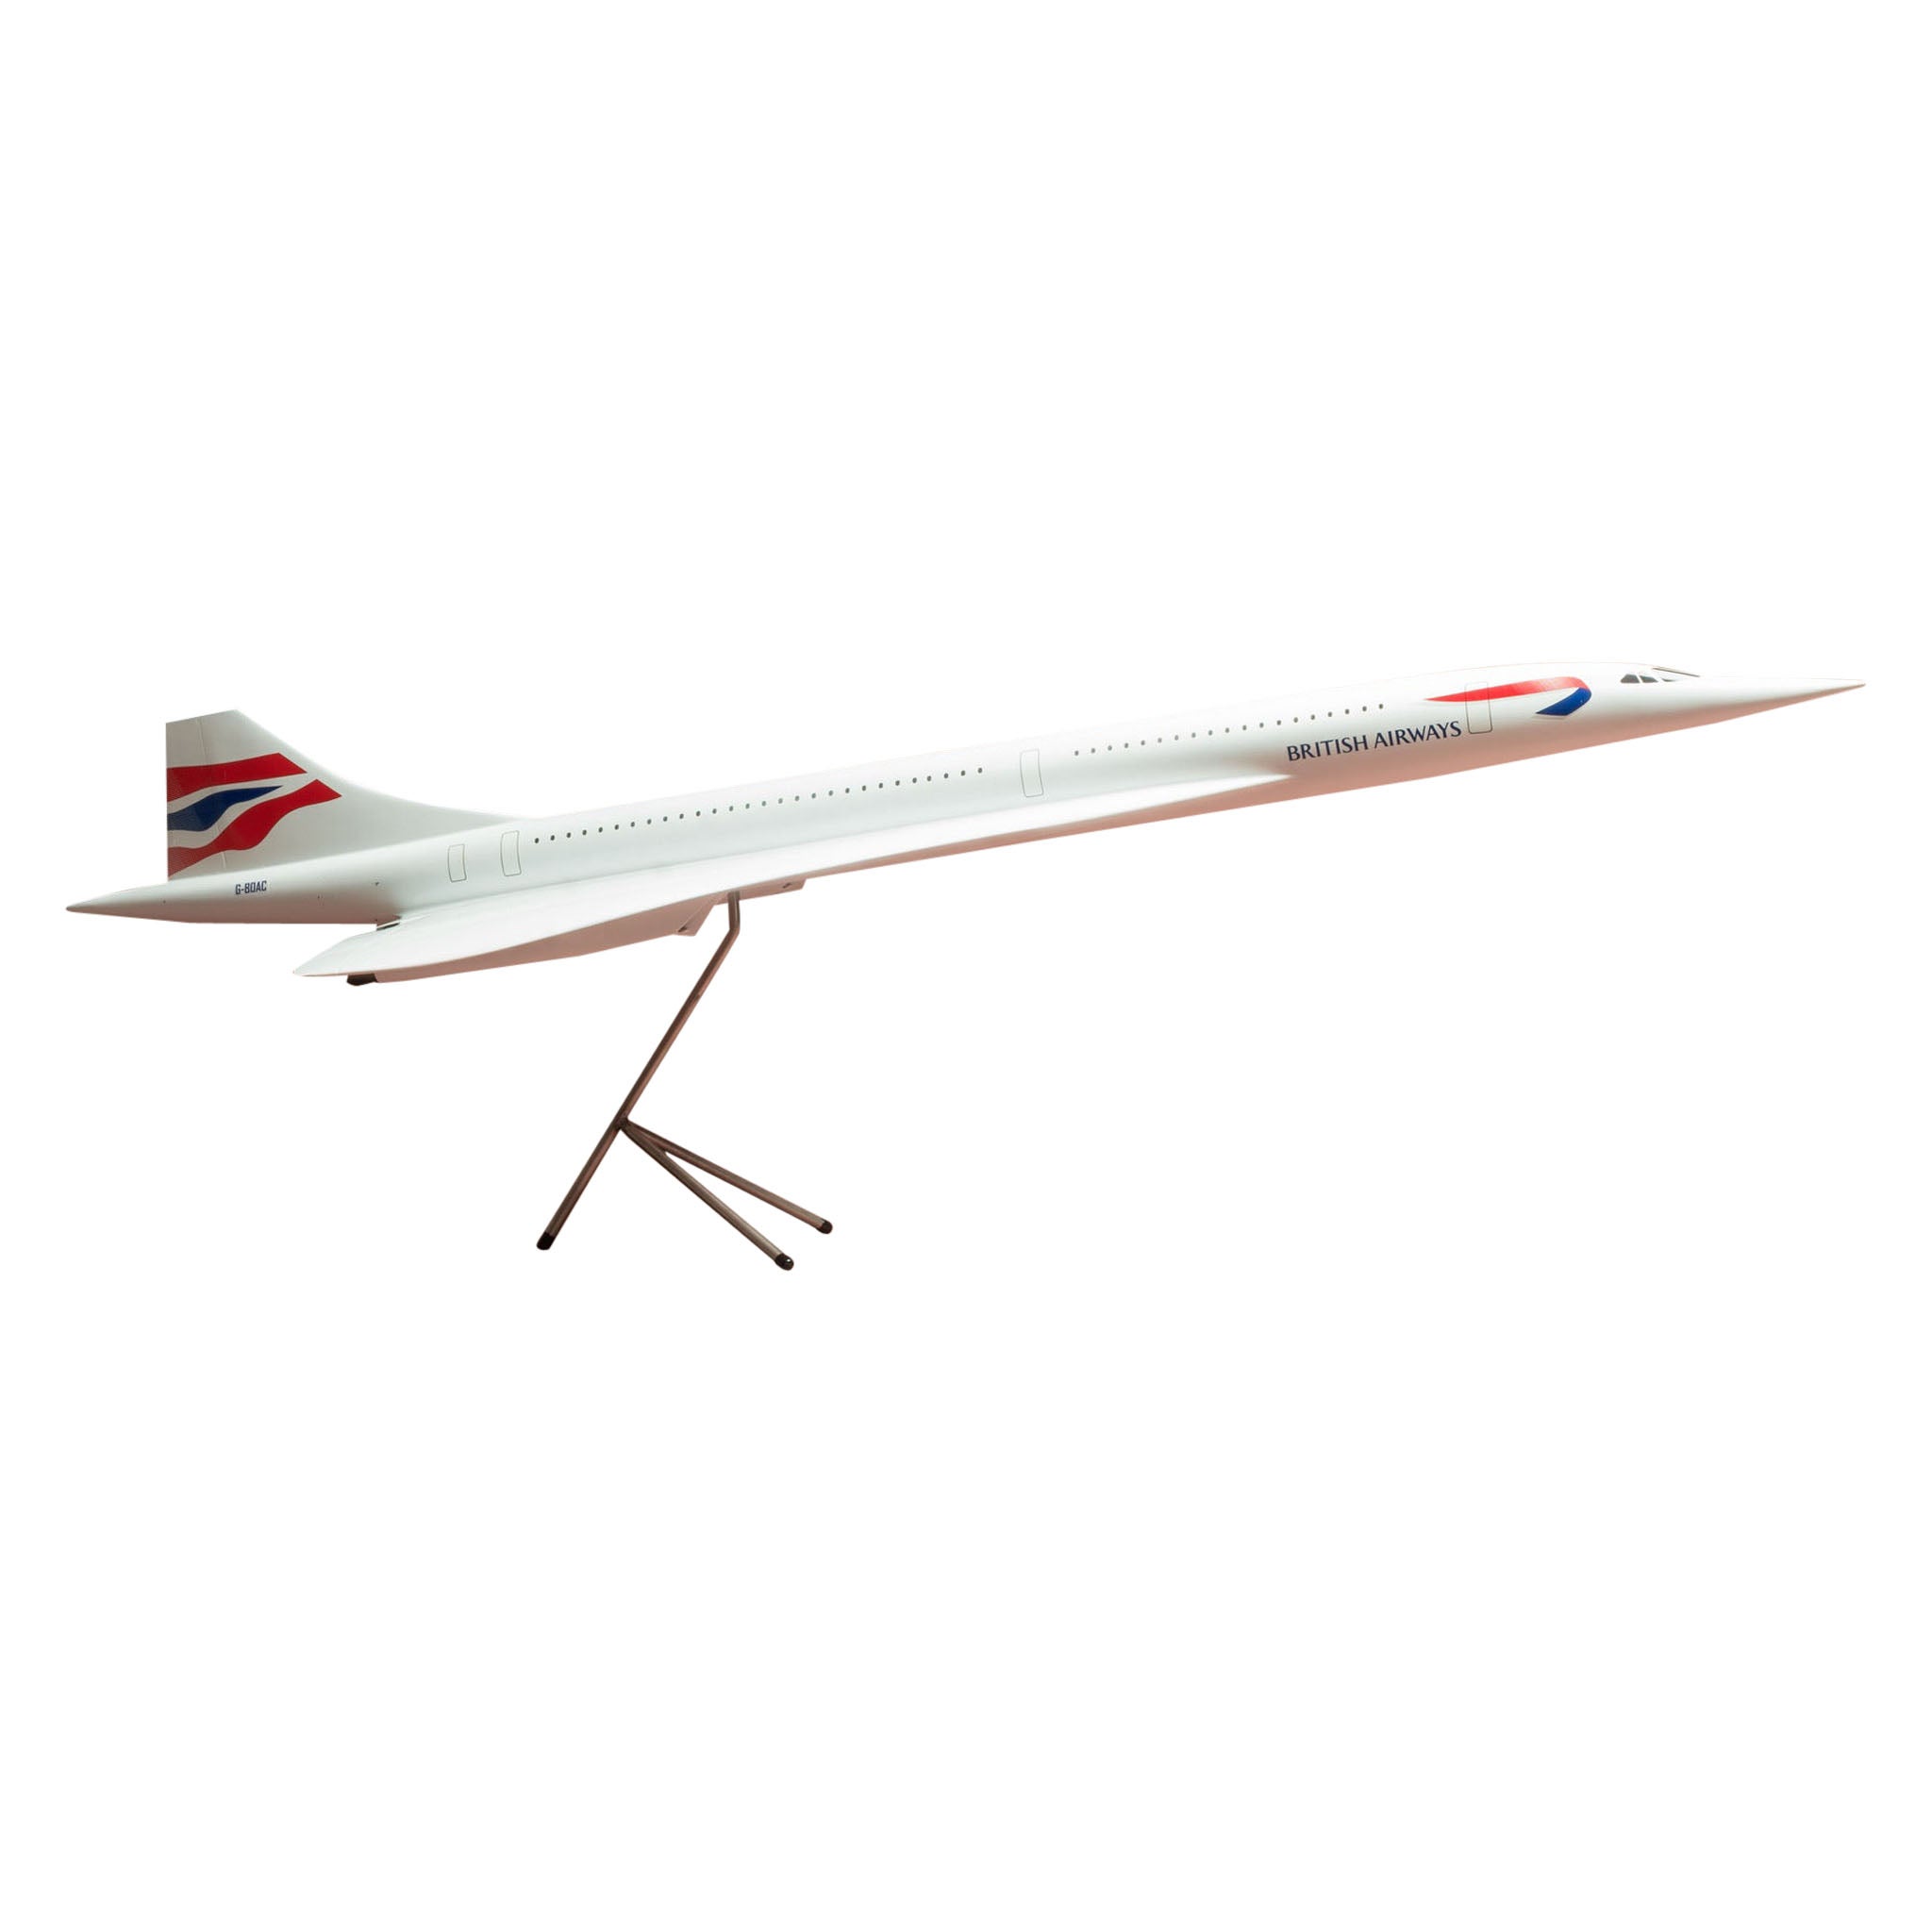 Original British Airways Concorde Model Airplane, circa 2001